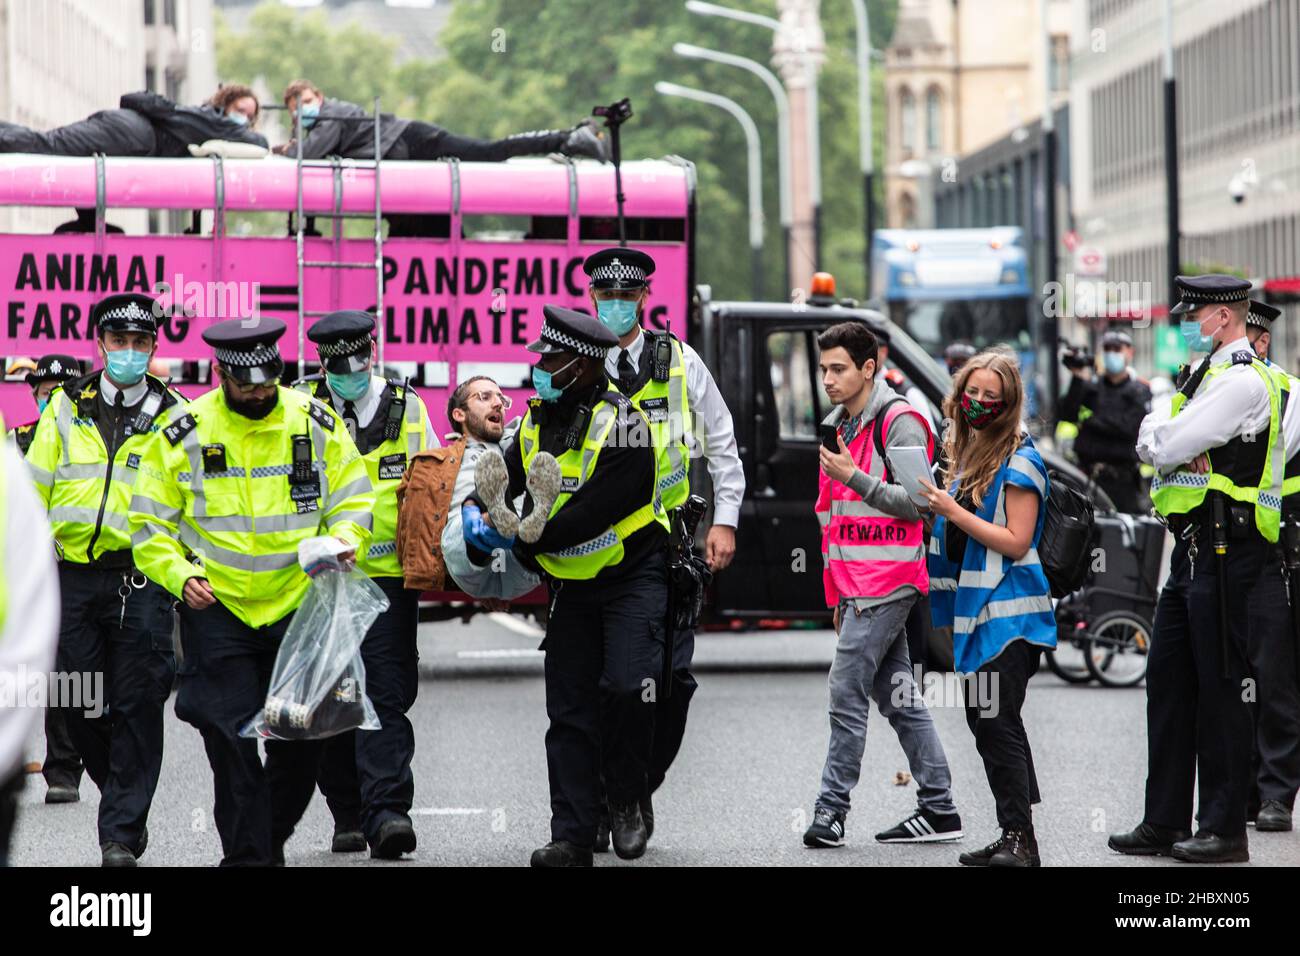 La policía arresta a un manifestante de Rebelión Animal frente a un camión rosa con un mensaje contra la cría de animales Londres 2020 Foto de stock